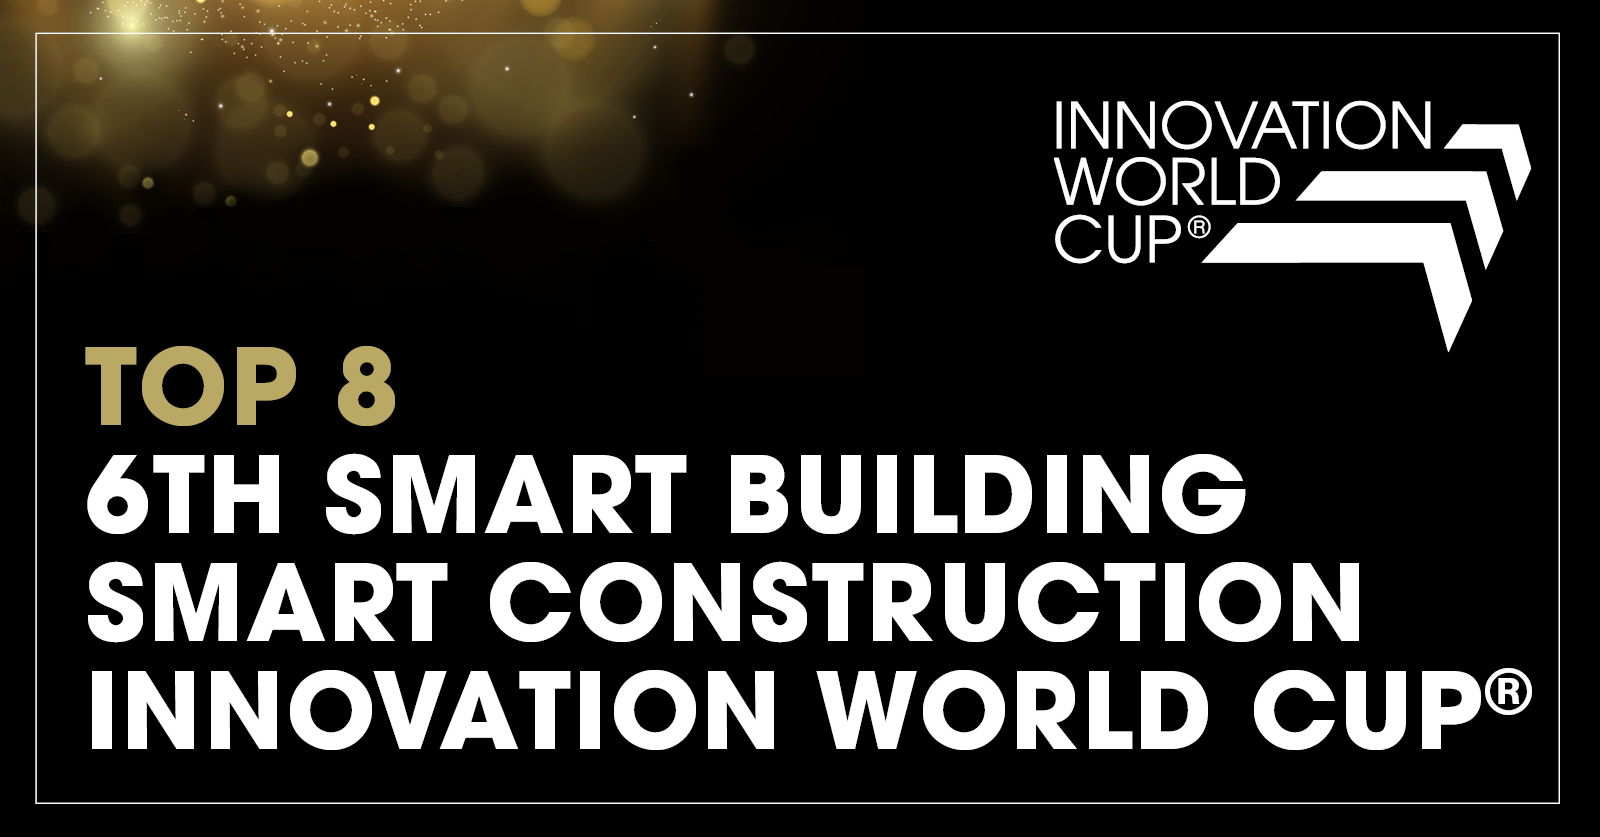 Beim Innovation World Cup© 2023 in München wurde der europäische HVAC-Spezialist Hysopt als einer der weltweit führenden Smart Building- und Smart Construction-Innovatoren ausgezeichnet.